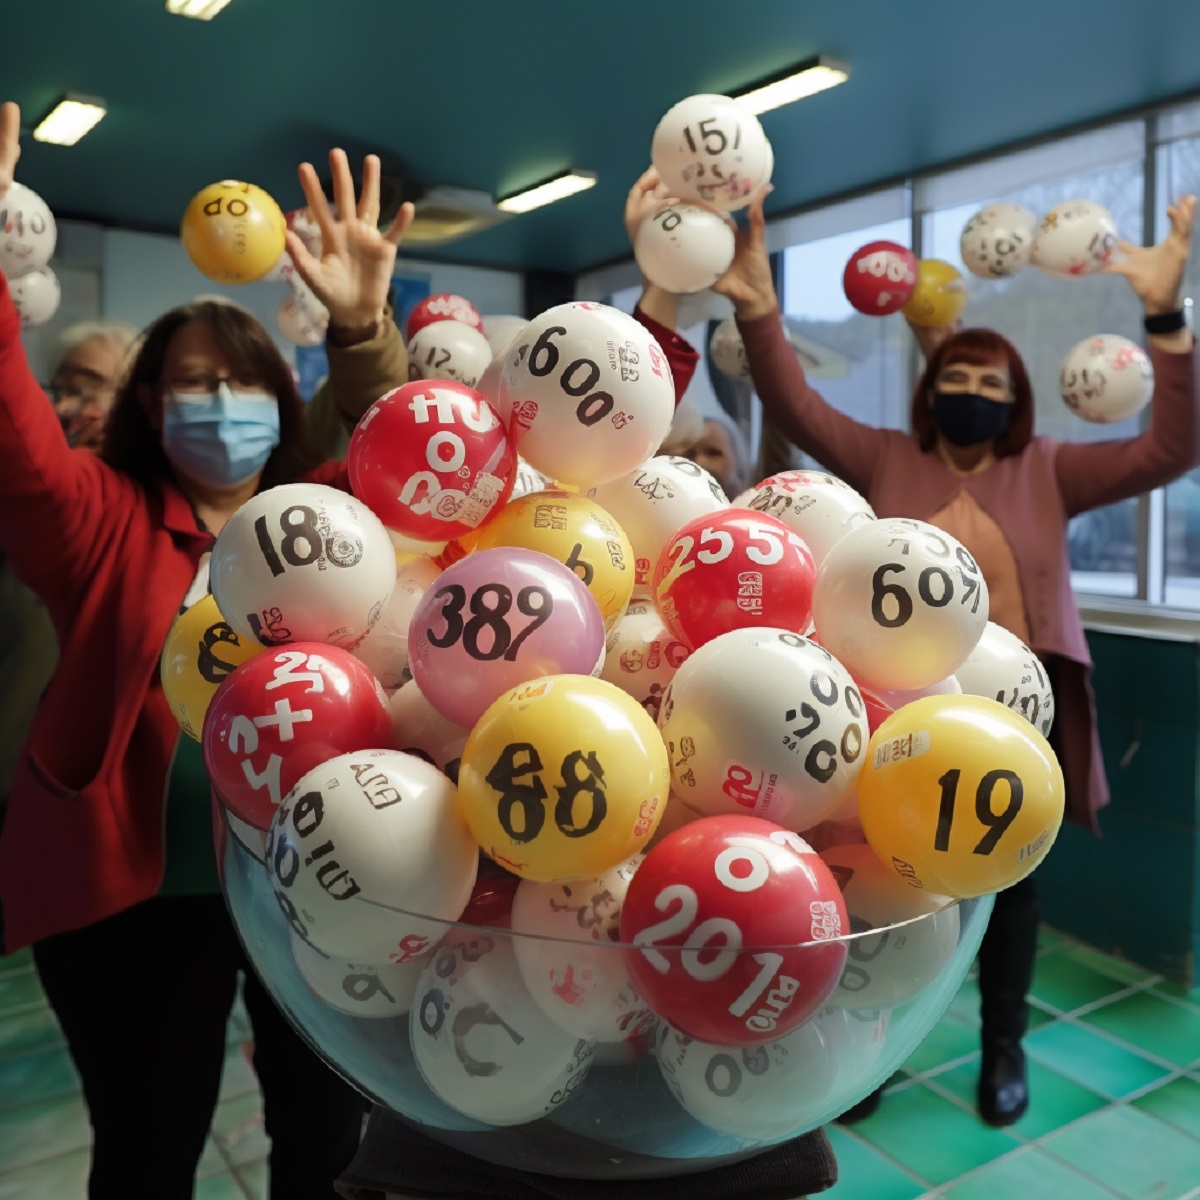 Números de lotería y personas celebrando, en nota sobre formas para ganar con la Lotería de Bogotá